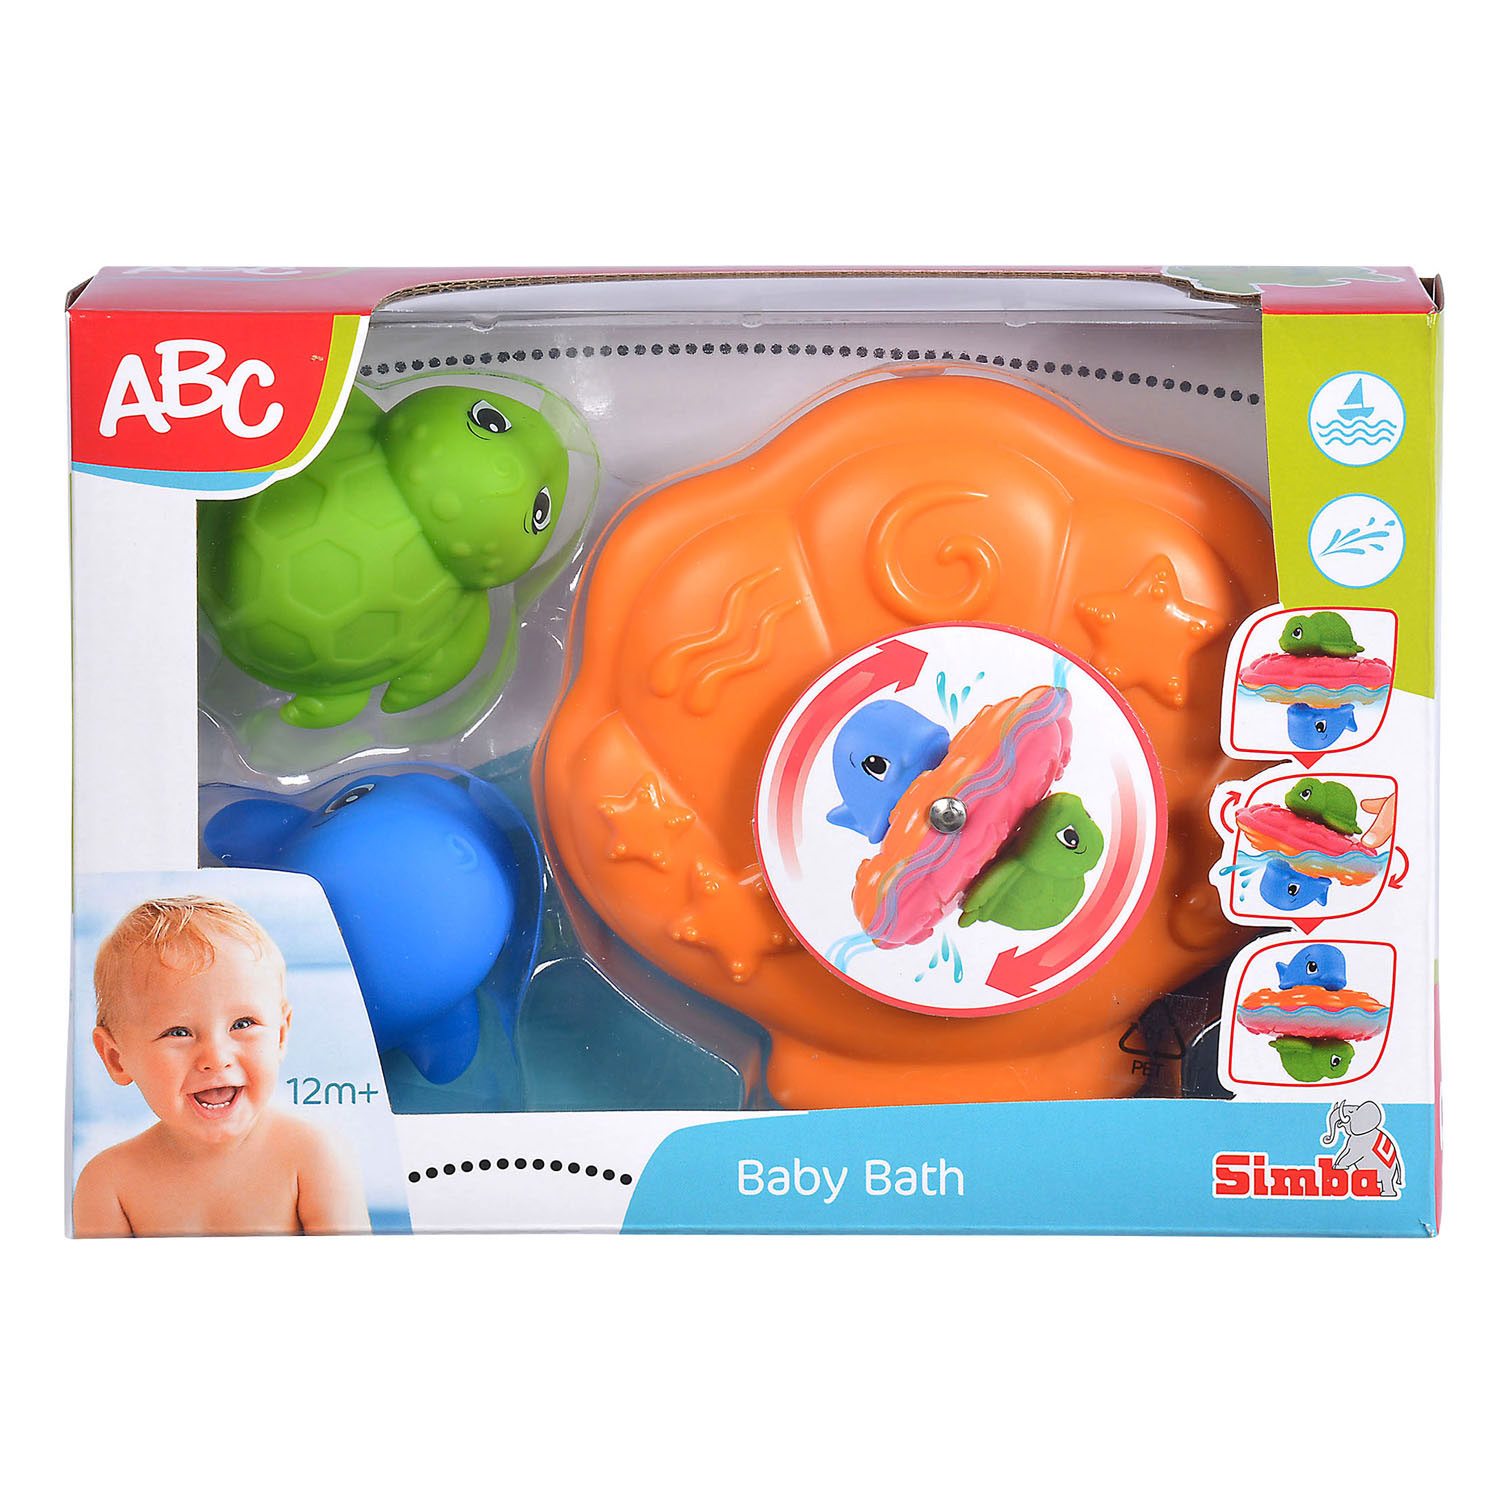 Coquille de jouet de bain ABC avec animaux marins